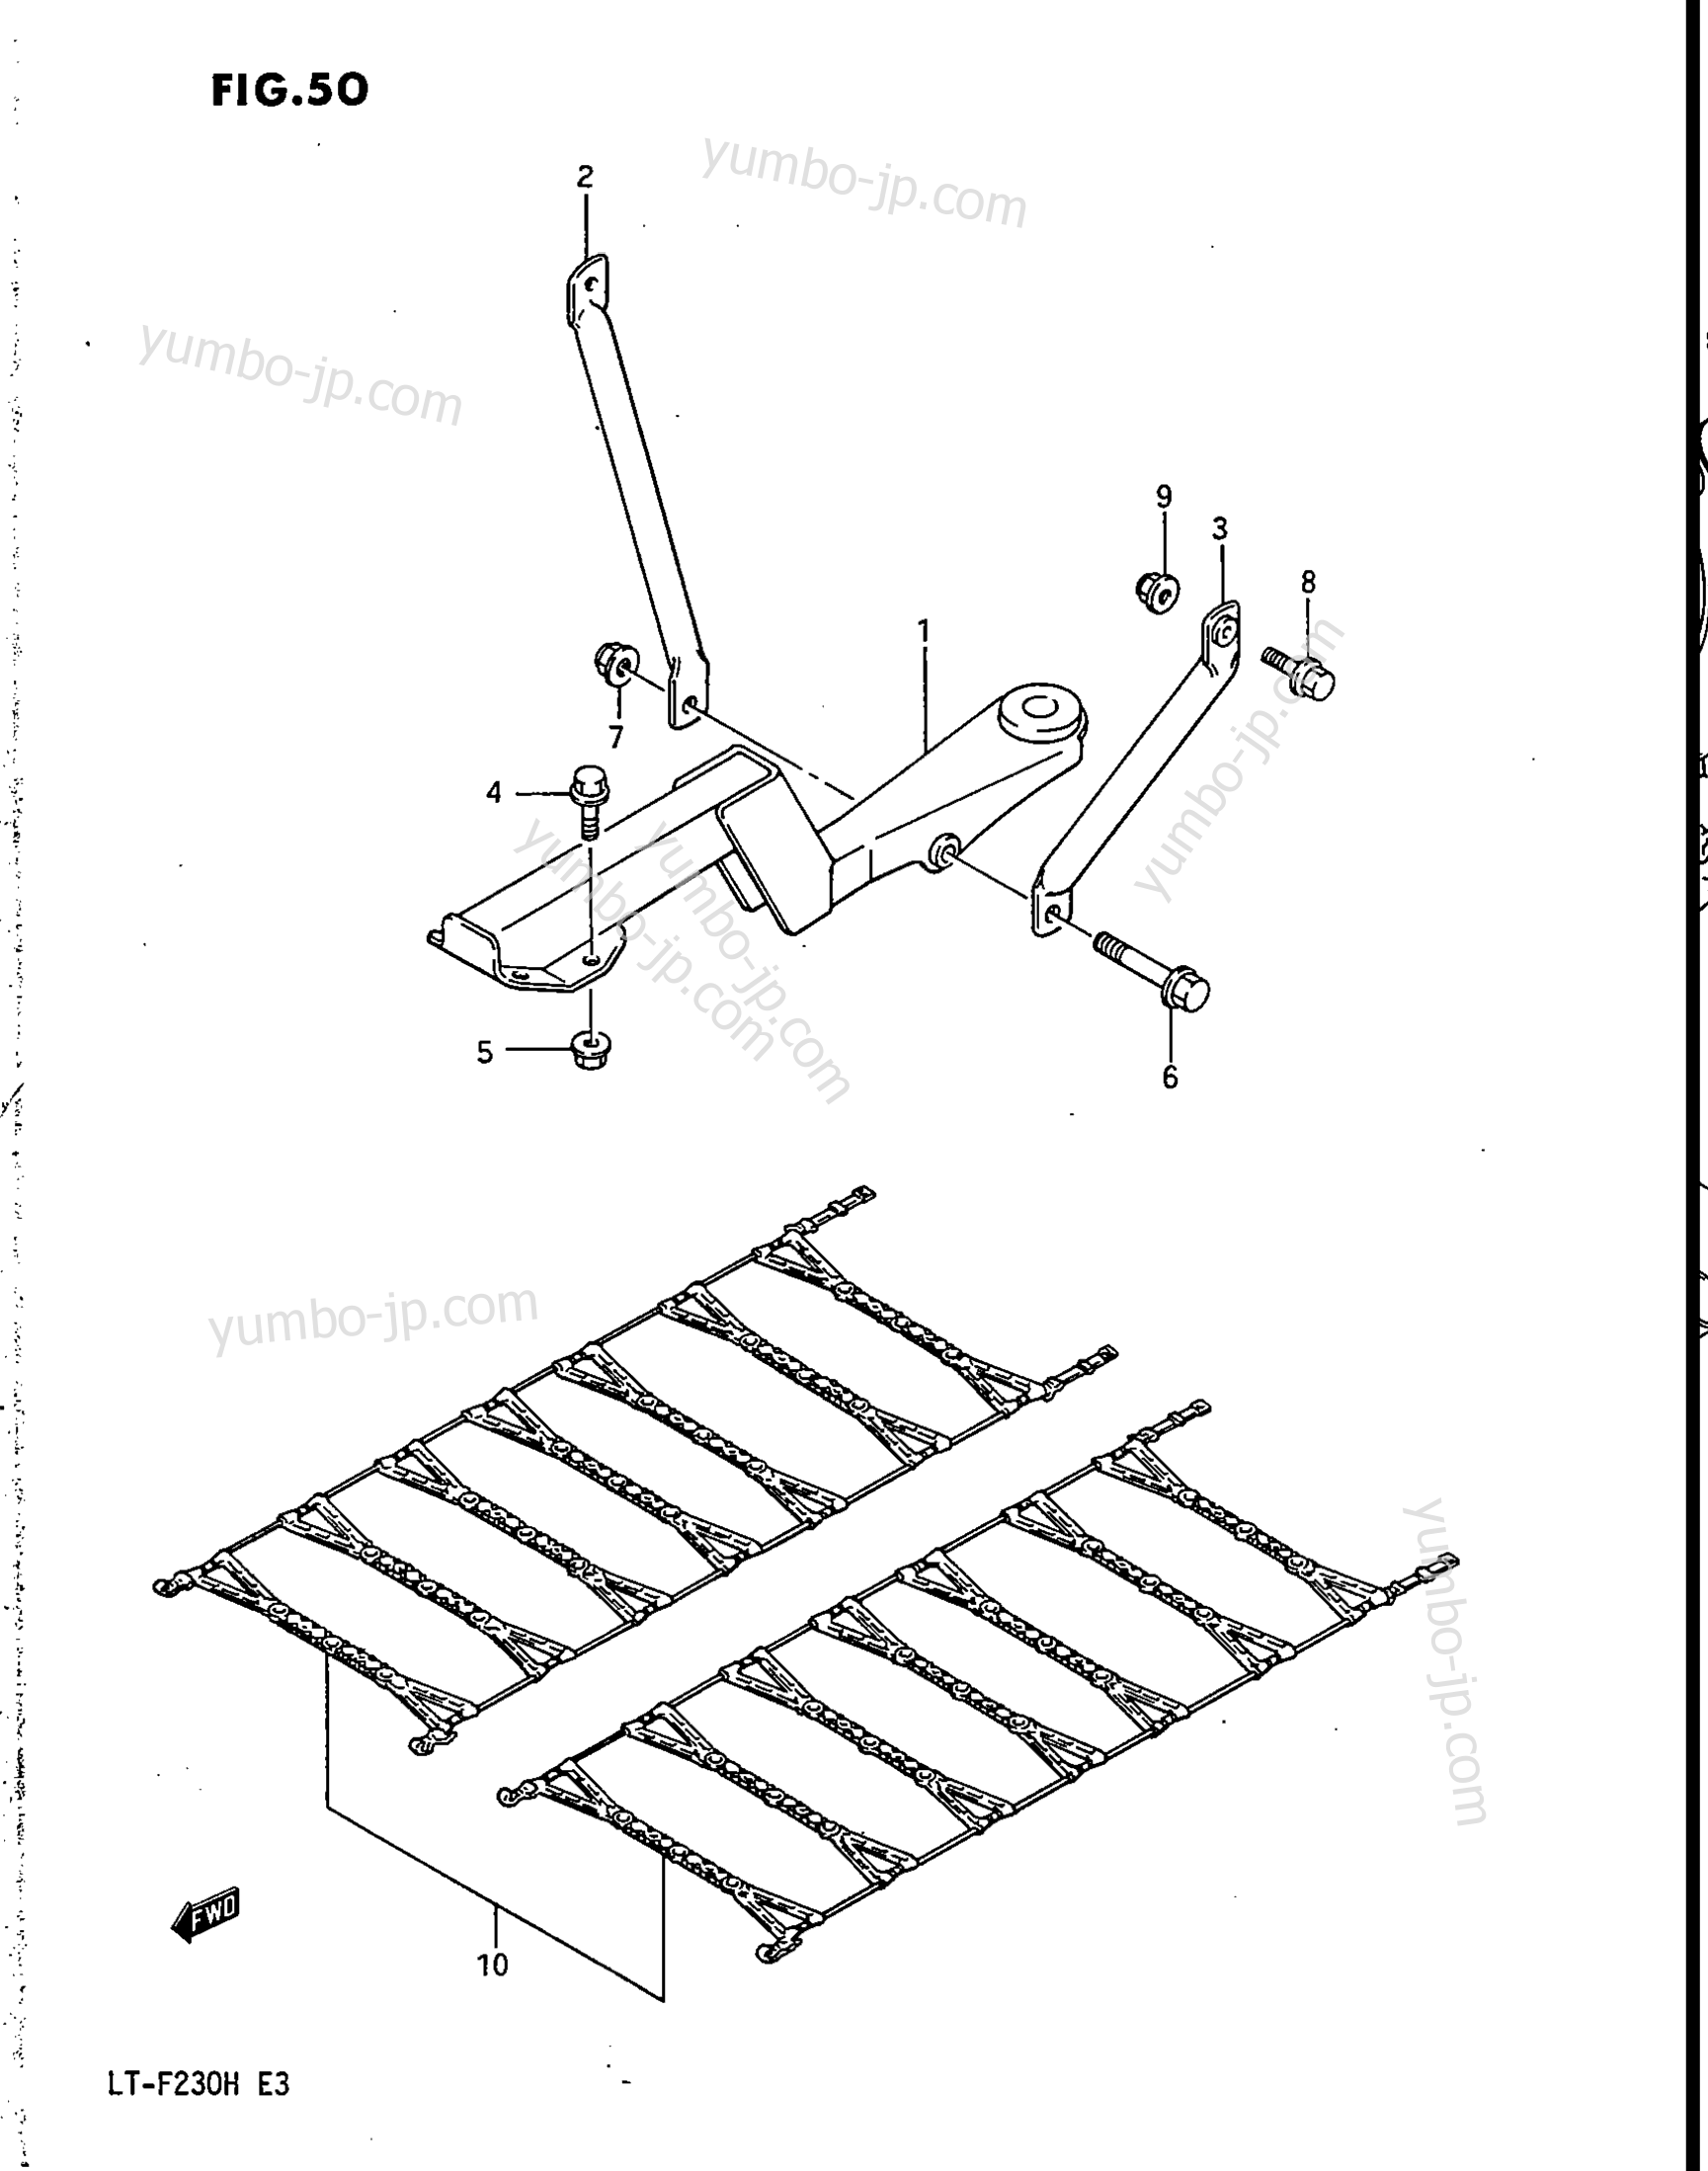 TRAILER BAR - TIRE TRACTION BELT (OPT) for ATVs SUZUKI LT-F230 1986 year